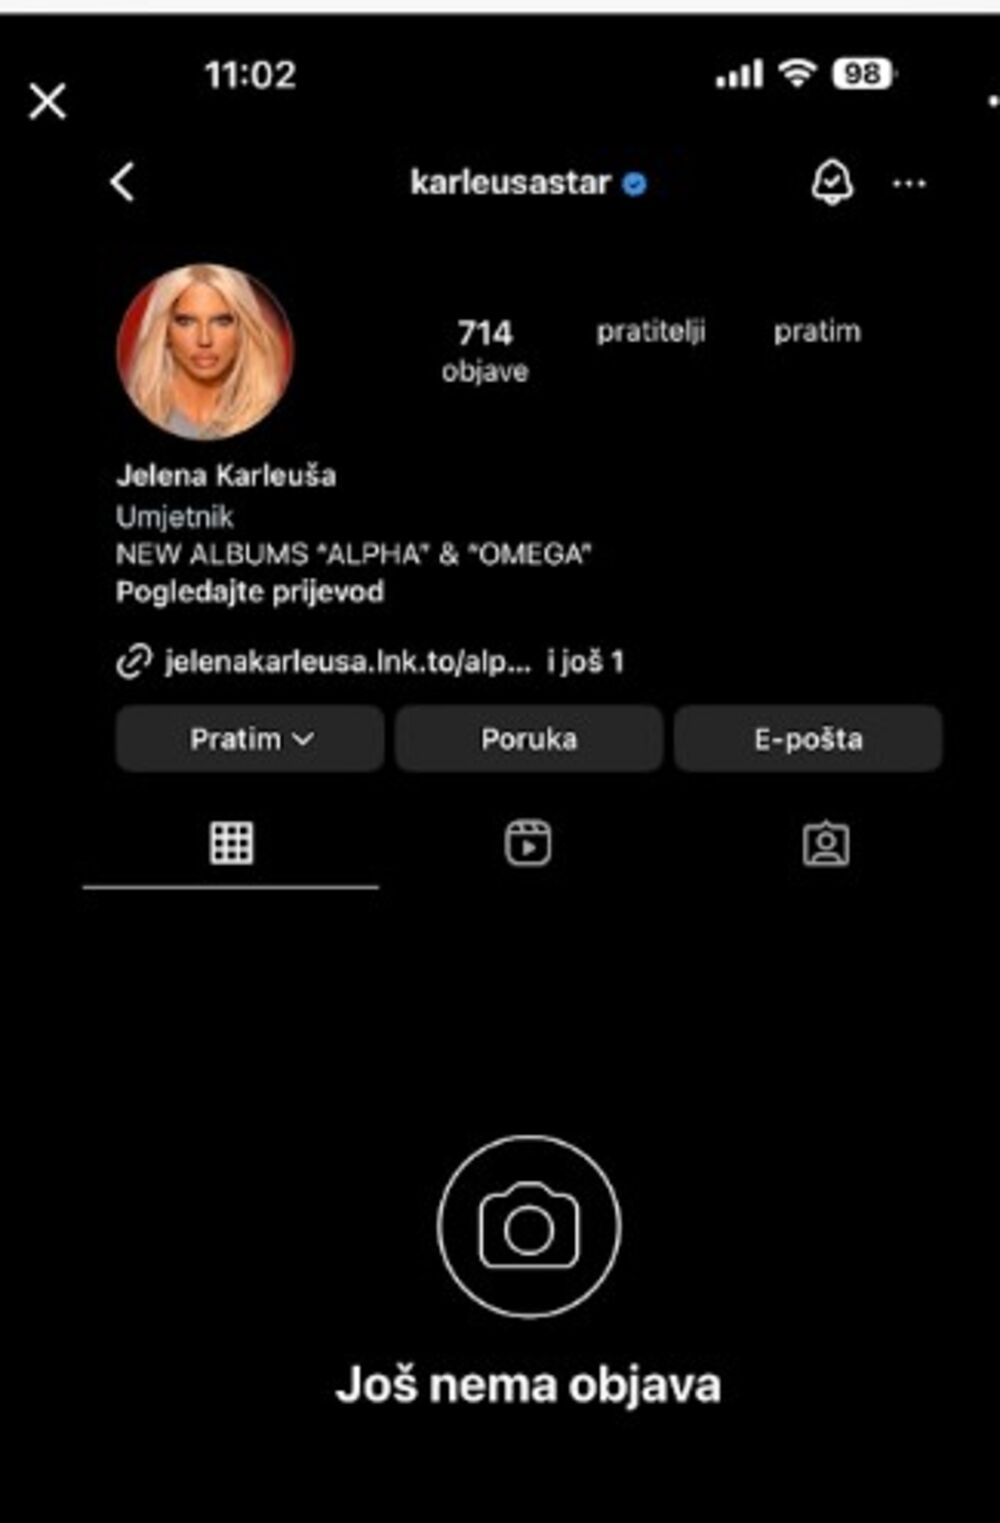 Jeleni Karleuši ugašen Instagram profil